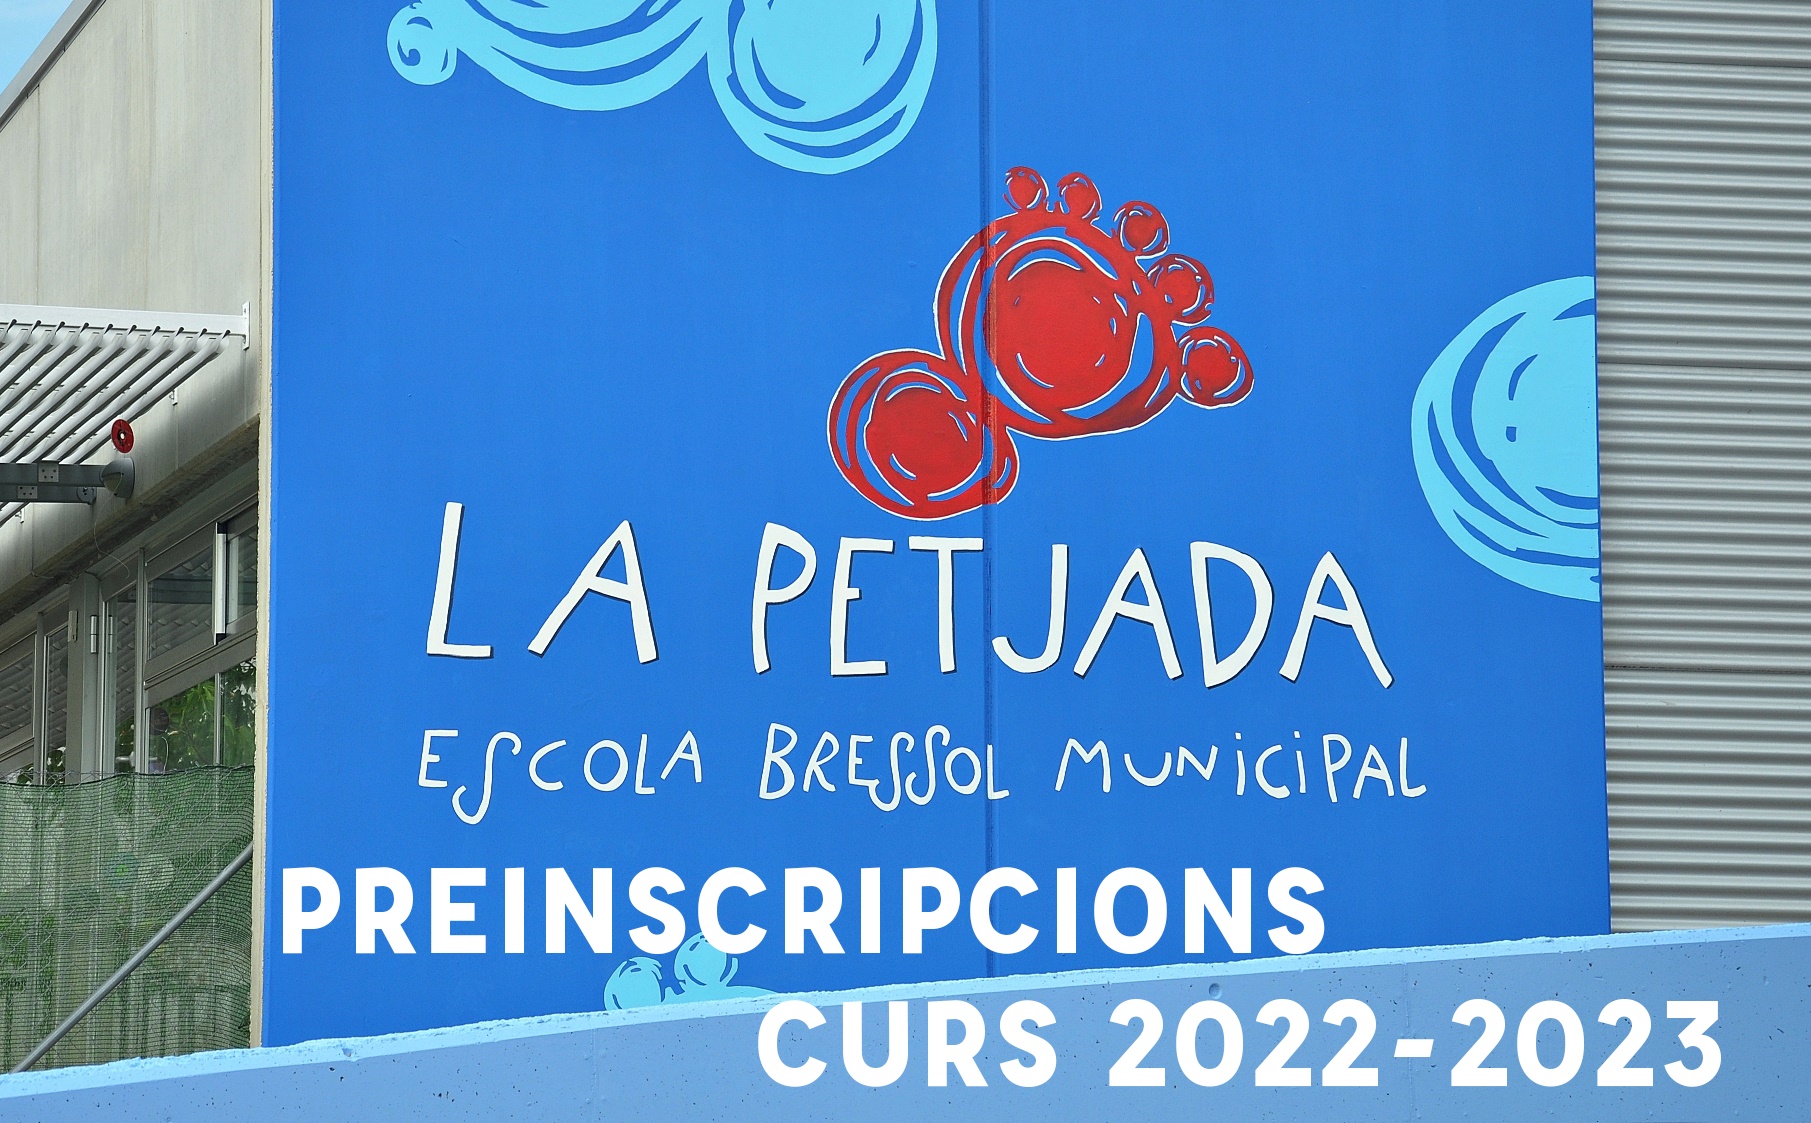 Preinscripcions a l'Escola Bressol La Petjada 2022-23